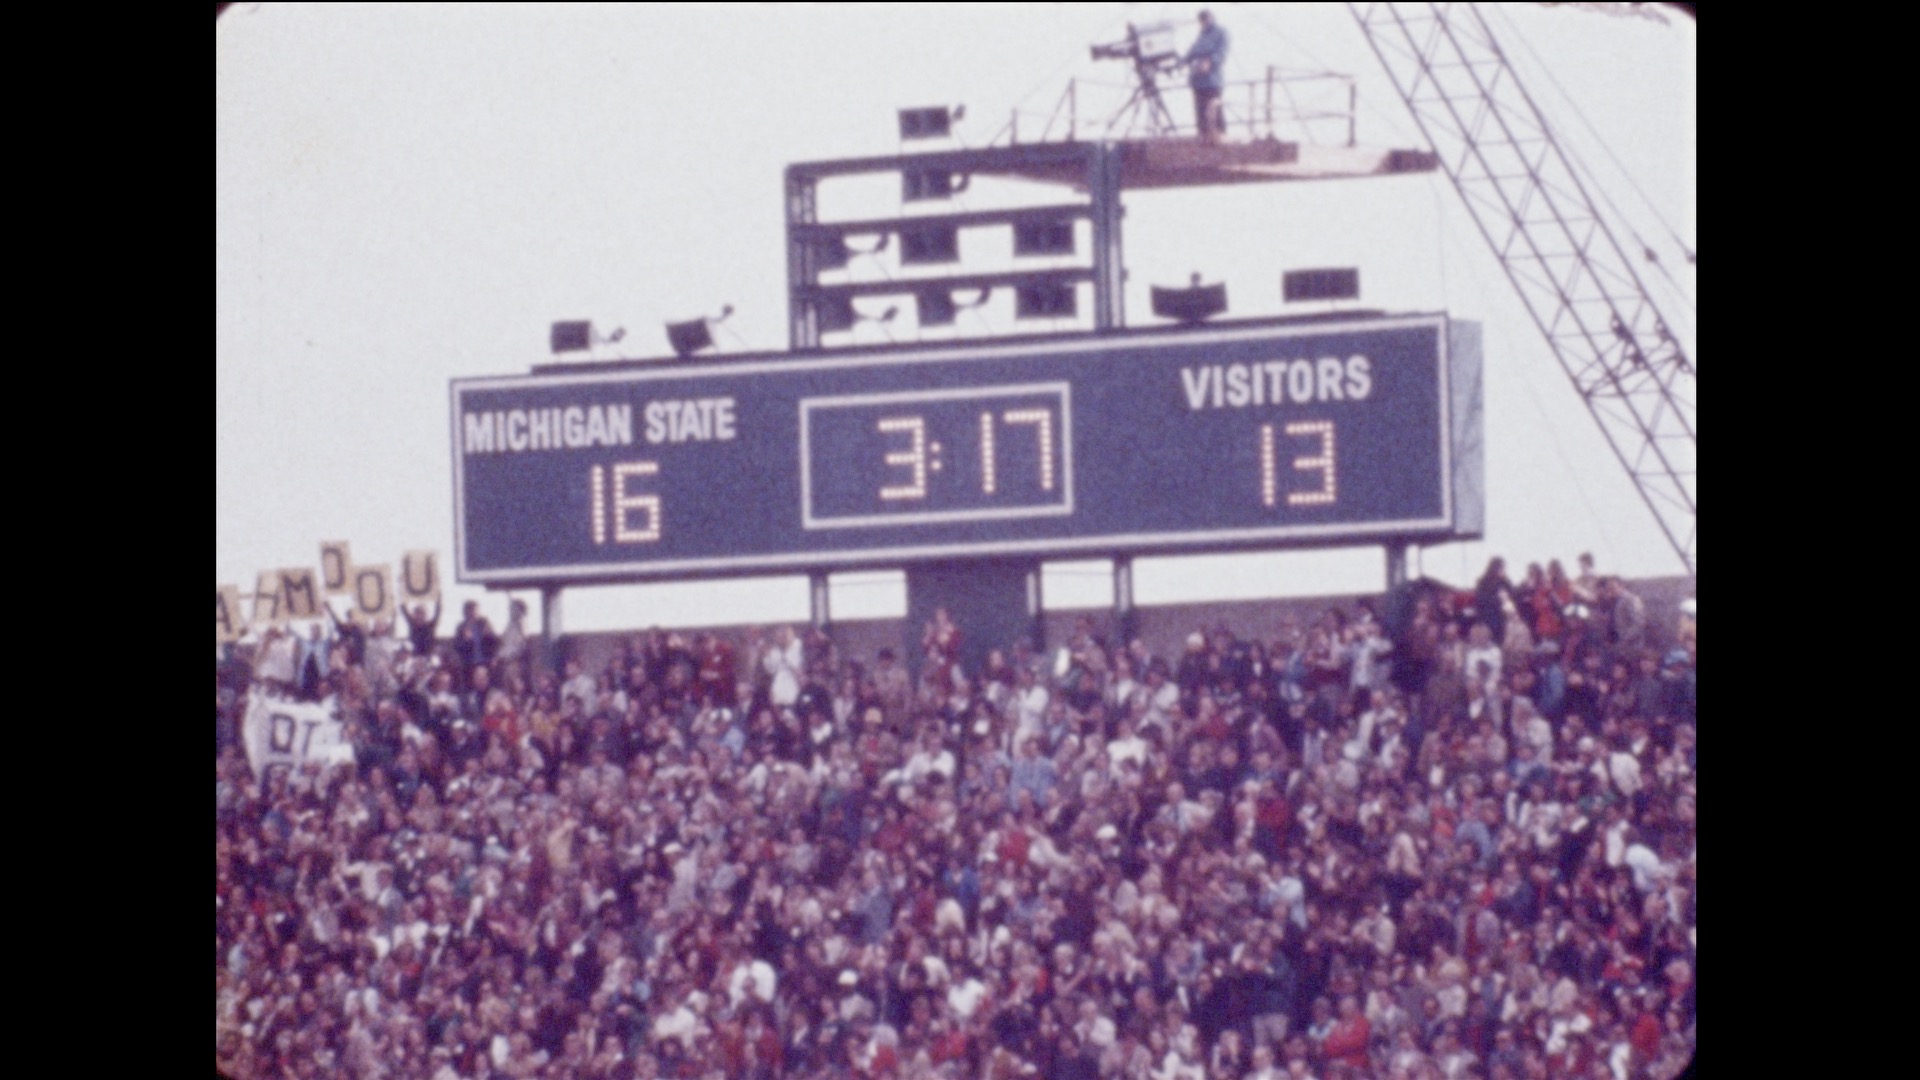 MSU Football vs. Ohio State, 1974 (reel 4)